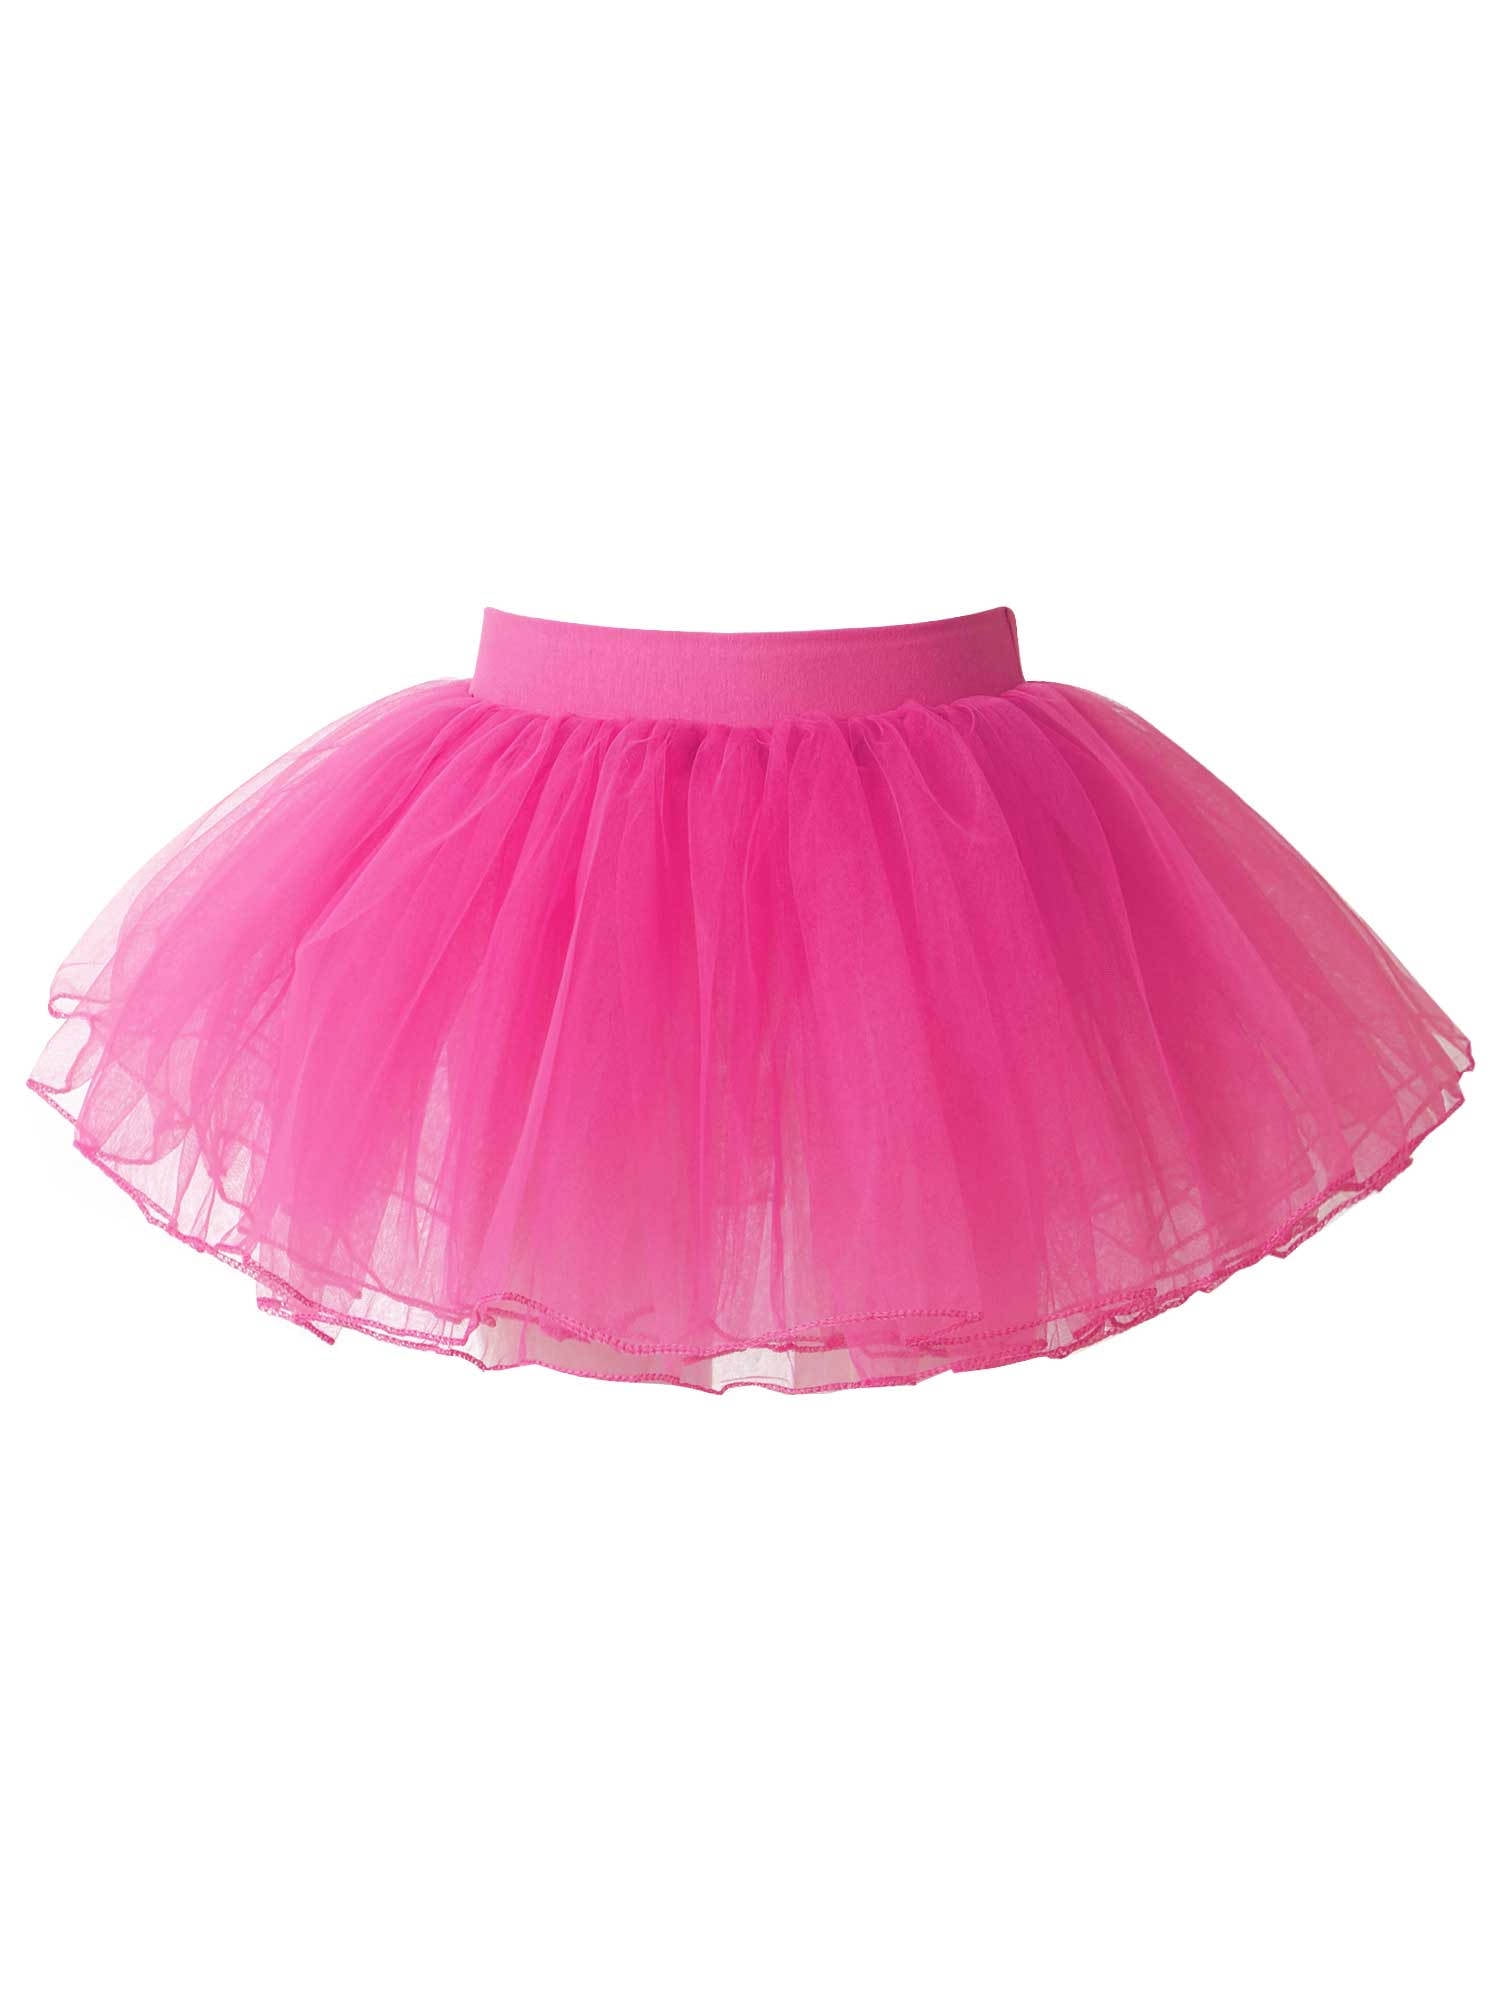 iiniim Kids Girls 4 Layers Tulle Tutu Skirt Ballerina Ballet Tutus ...